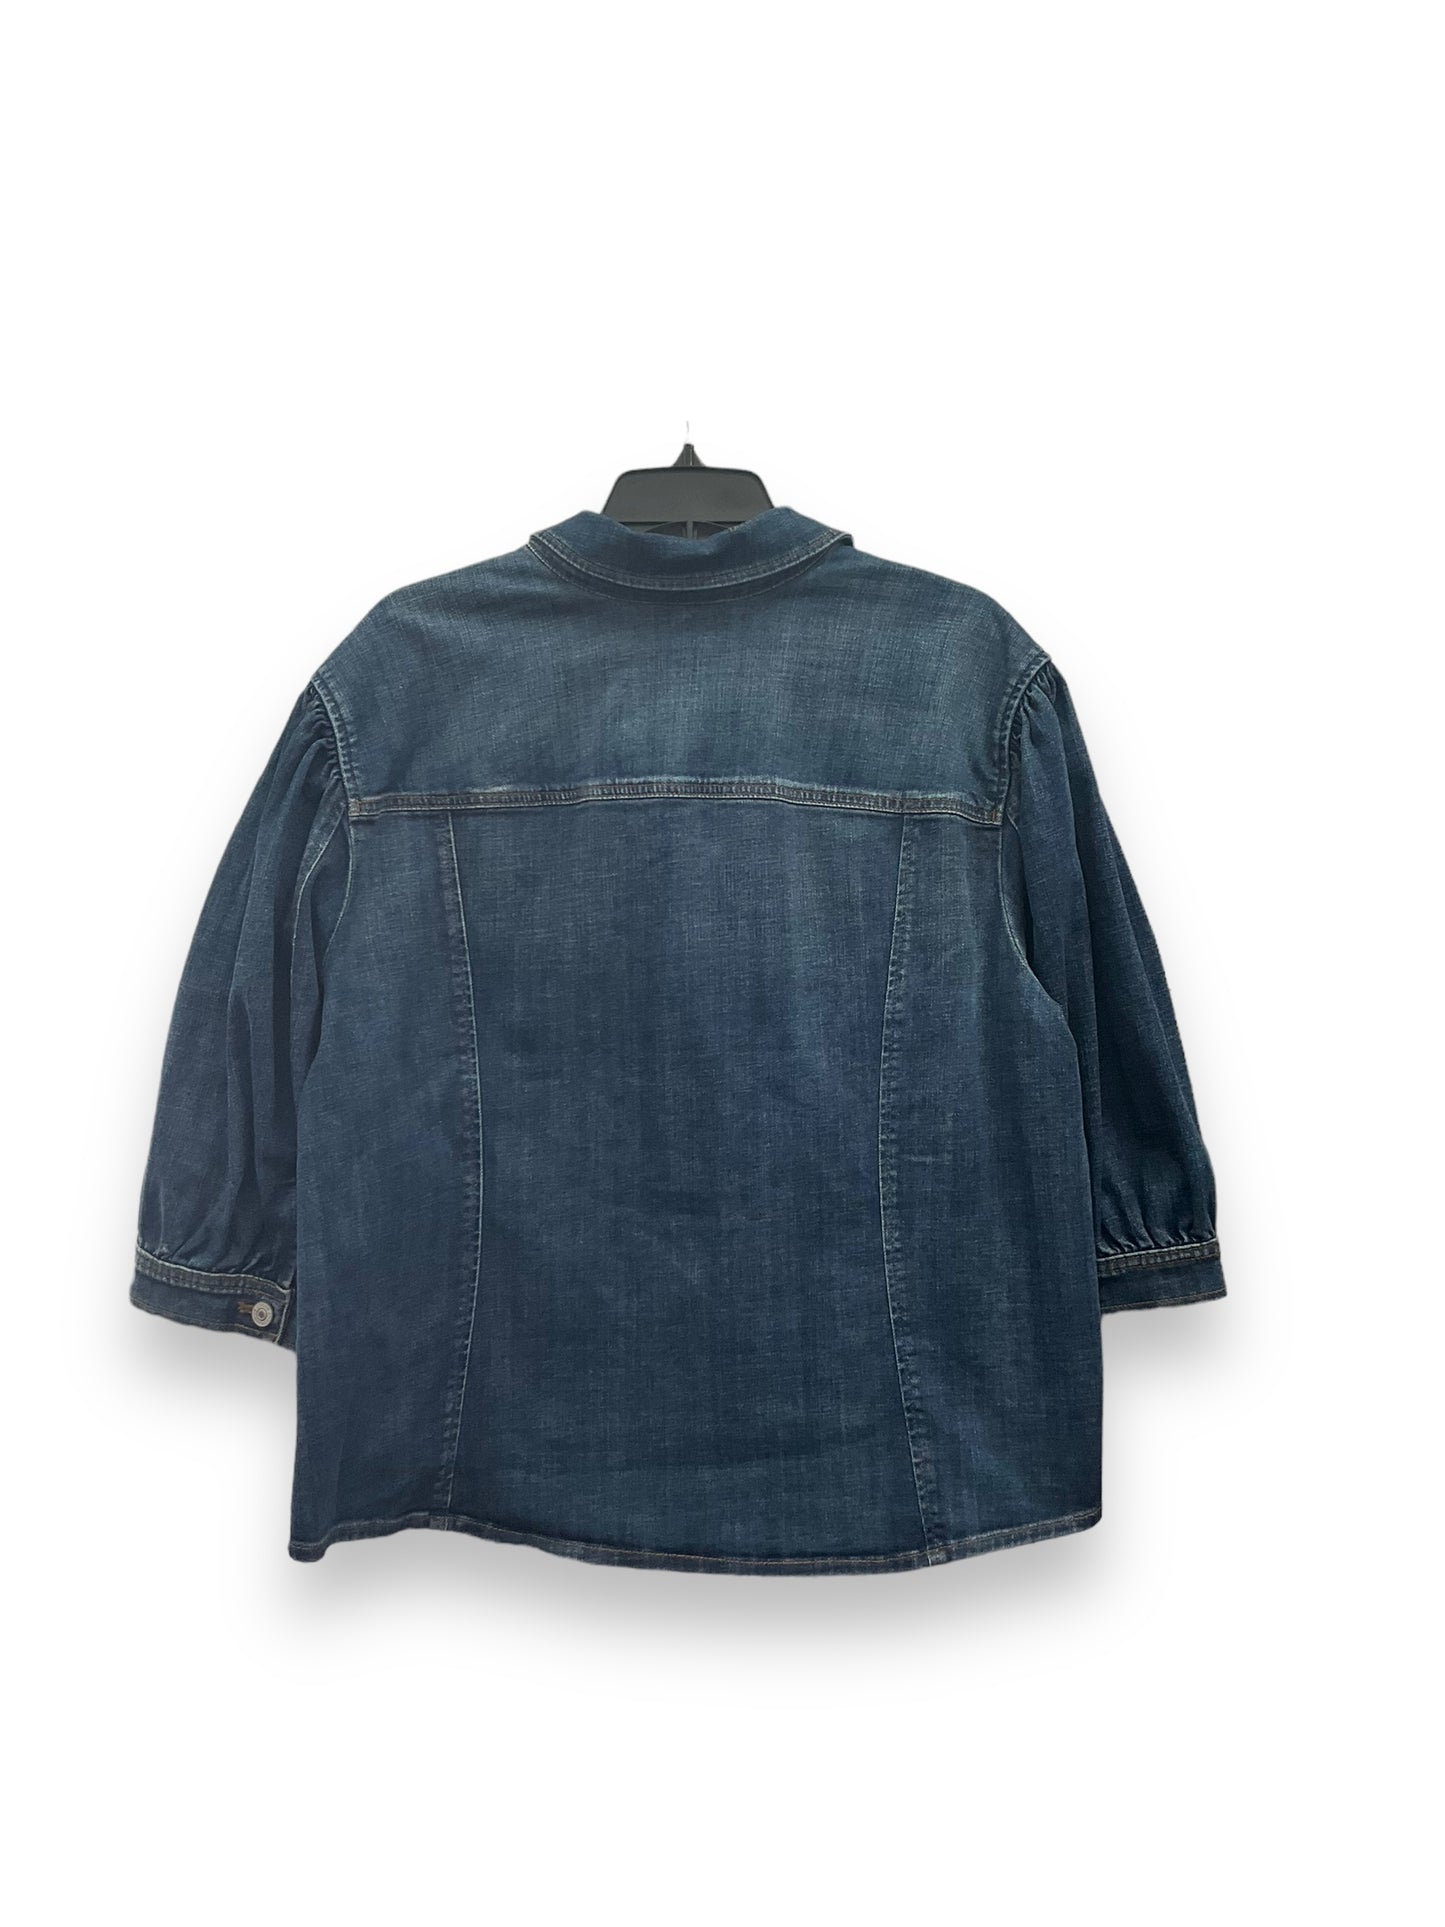 Jacket Denim By Chicos  Size: Xxl